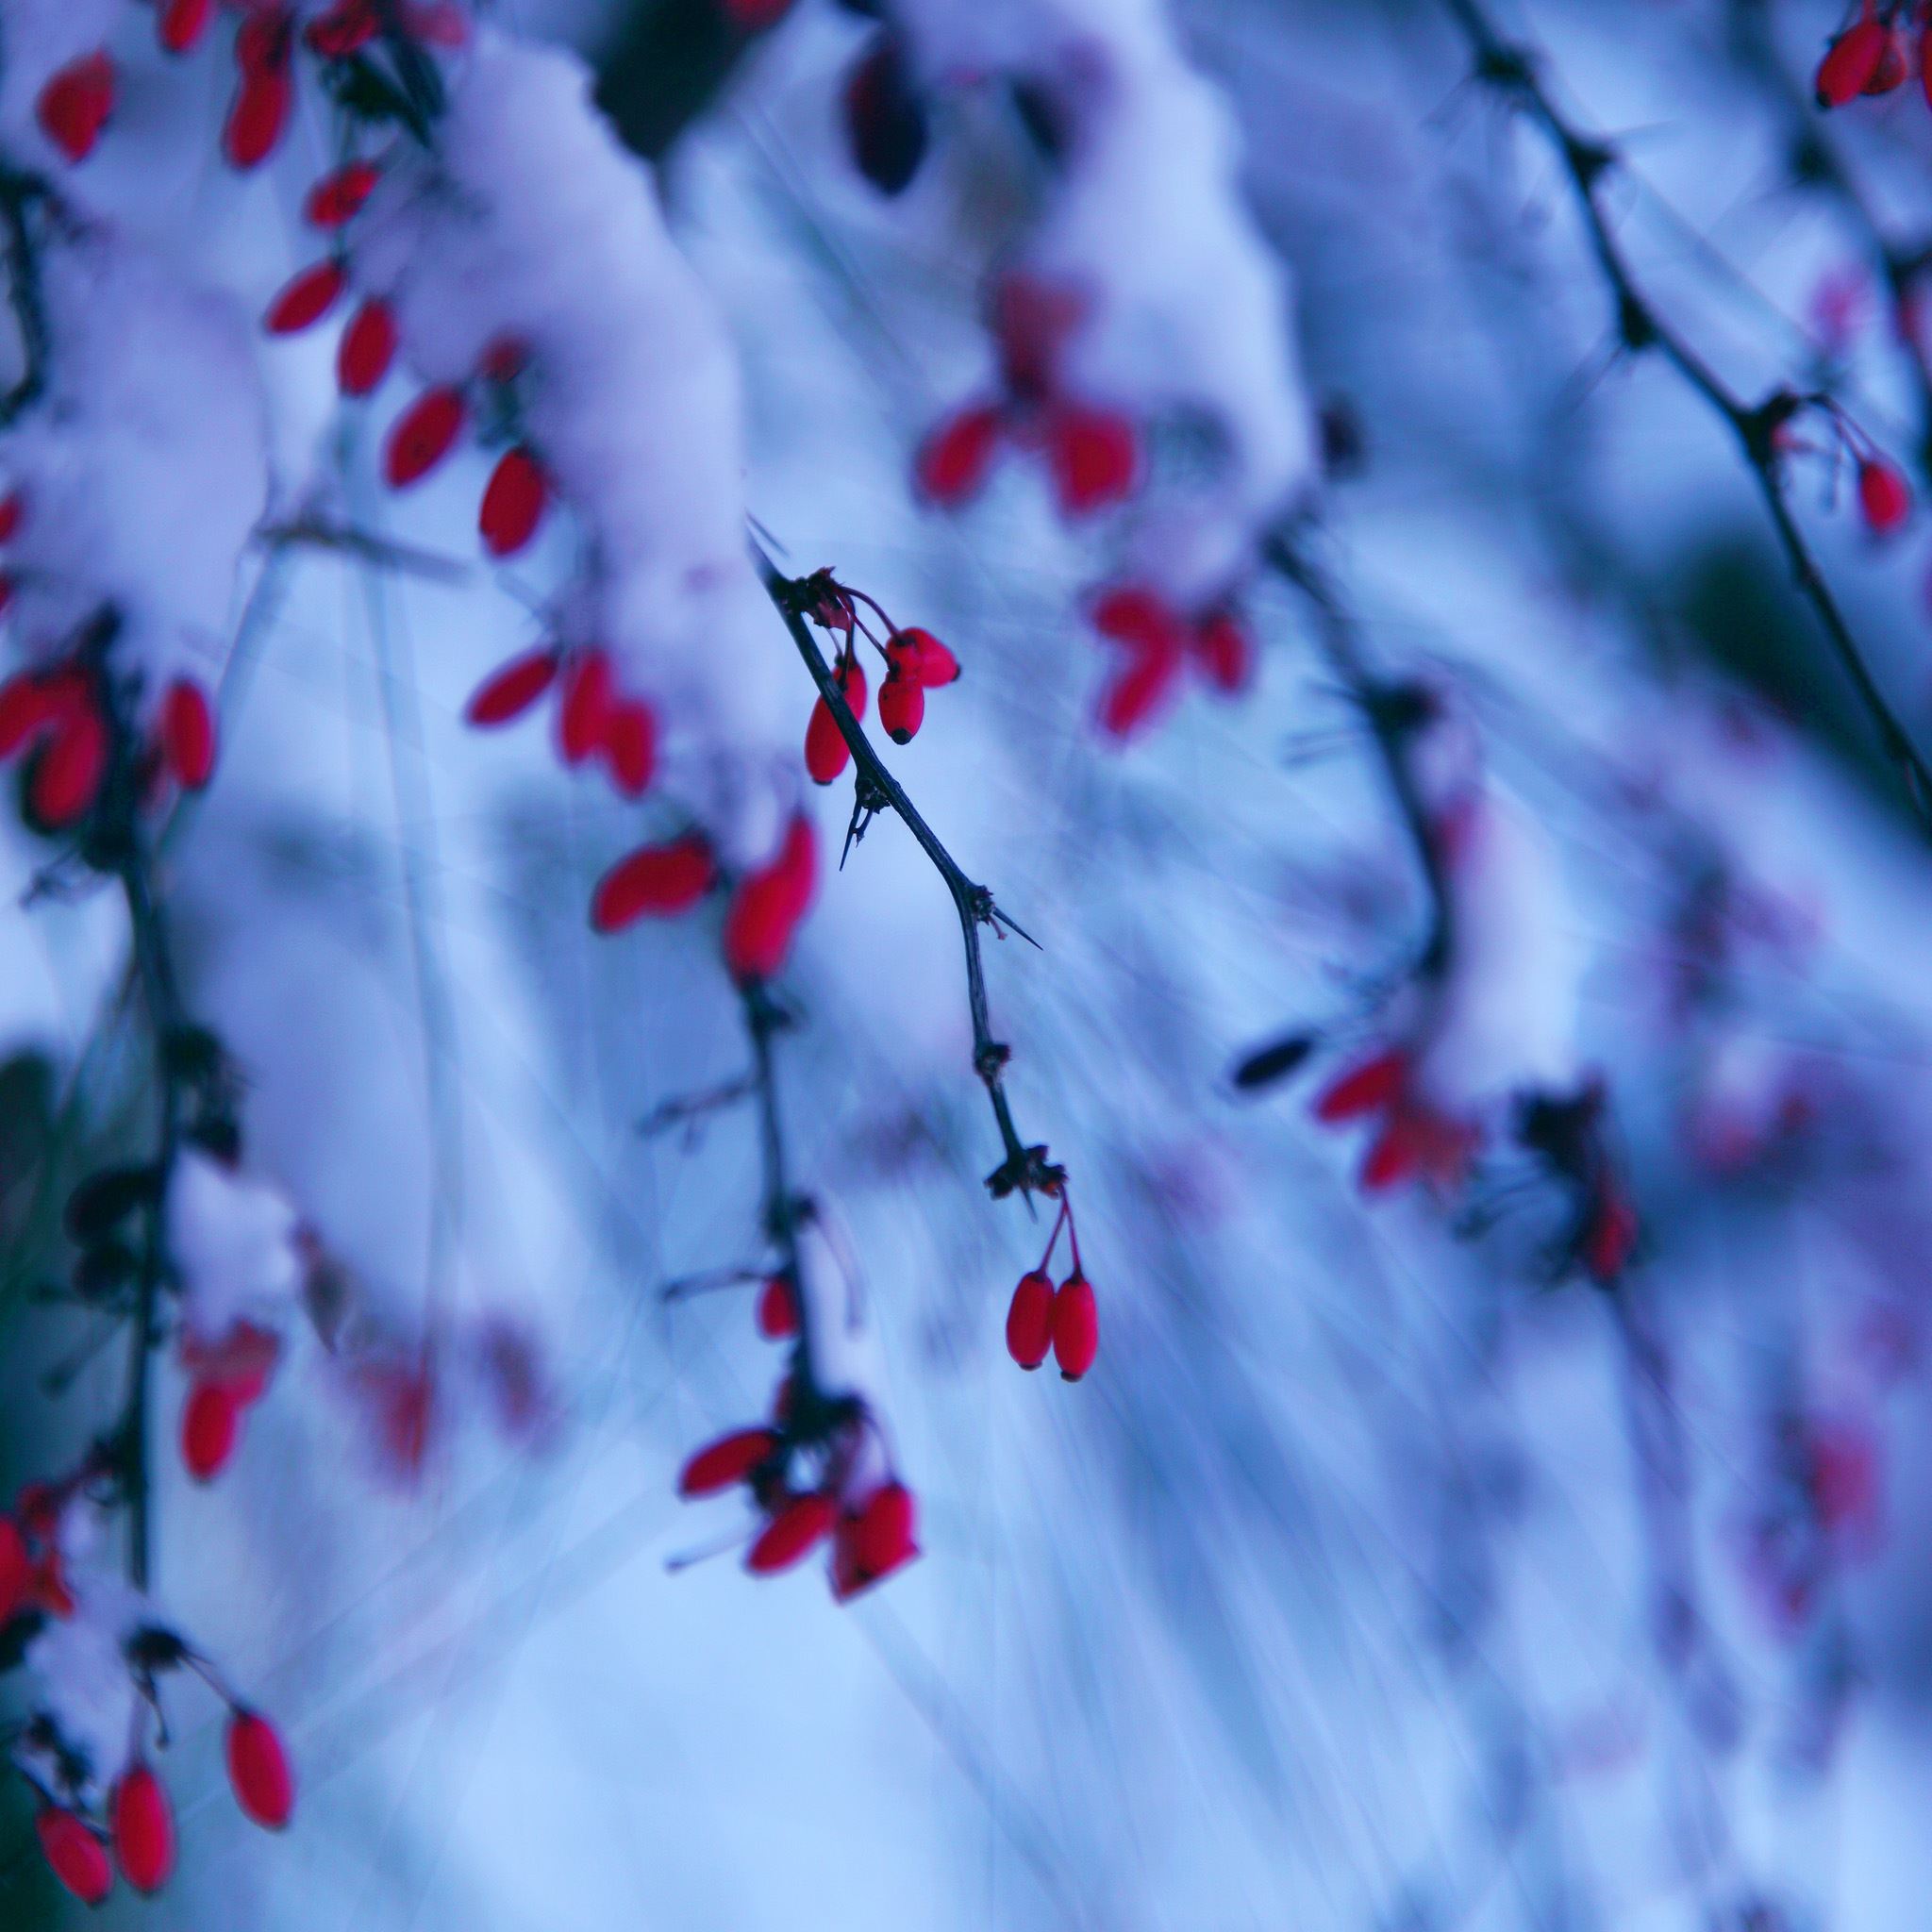 Red winter berries iPad Air wallpaper 